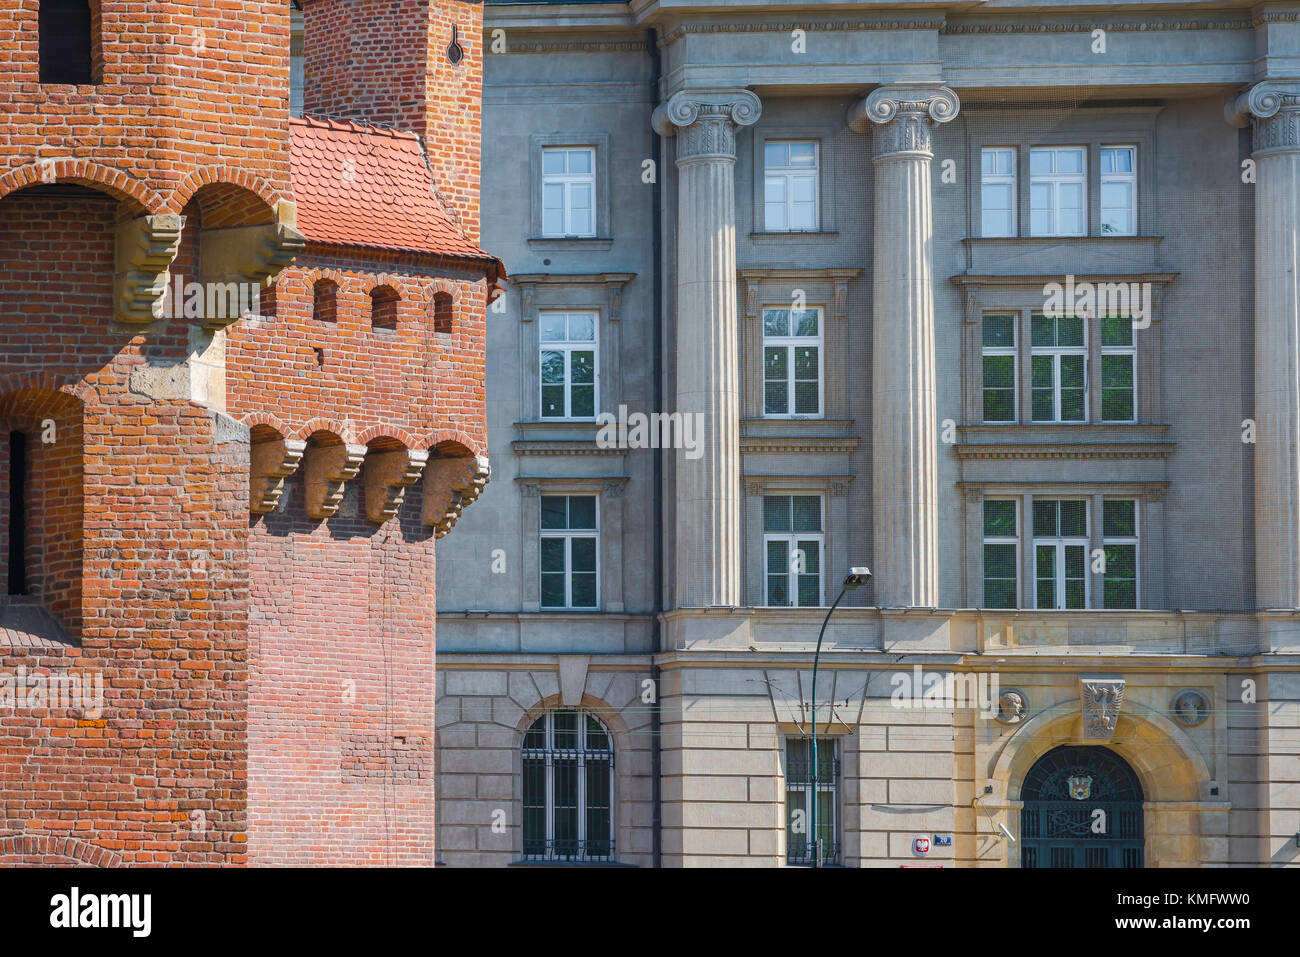 L'architecture de Cracovie, le flanc est de la barbacane médiévale contraste avec un grand bâtiment néoclassique du 19e siècle à Cracovie, Pologne. Banque D'Images